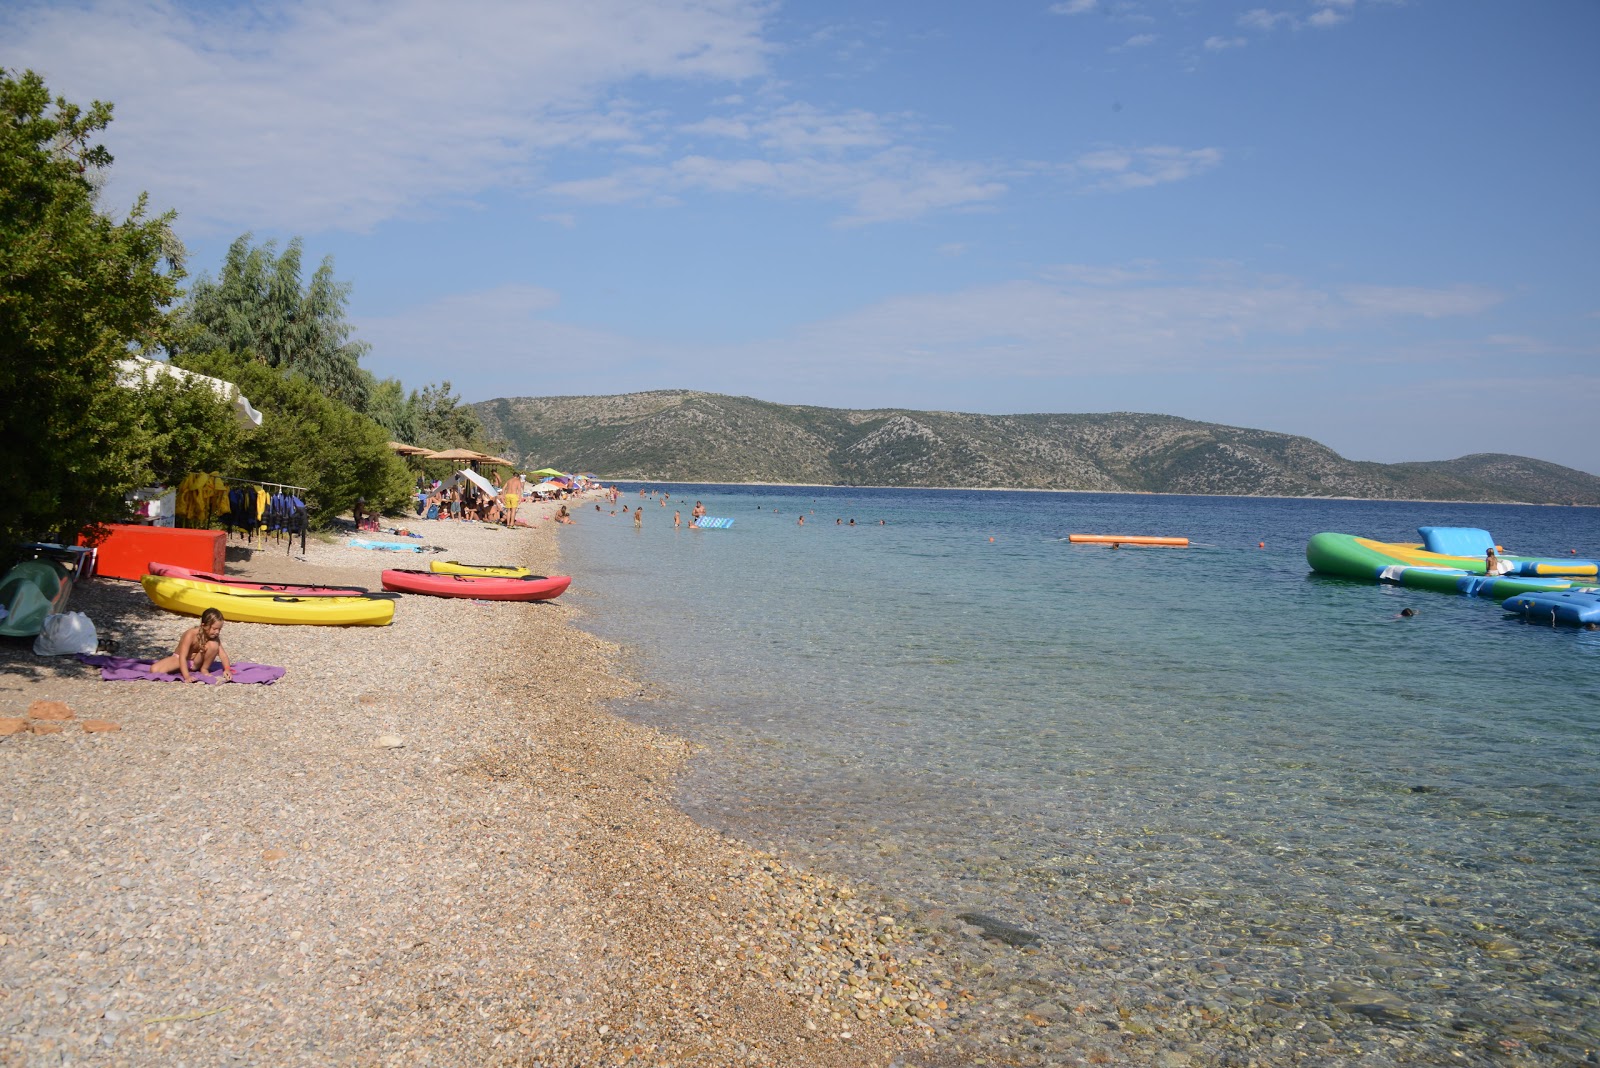 Foto af Ag. Dimitrios beach - populært sted blandt afslapningskendere